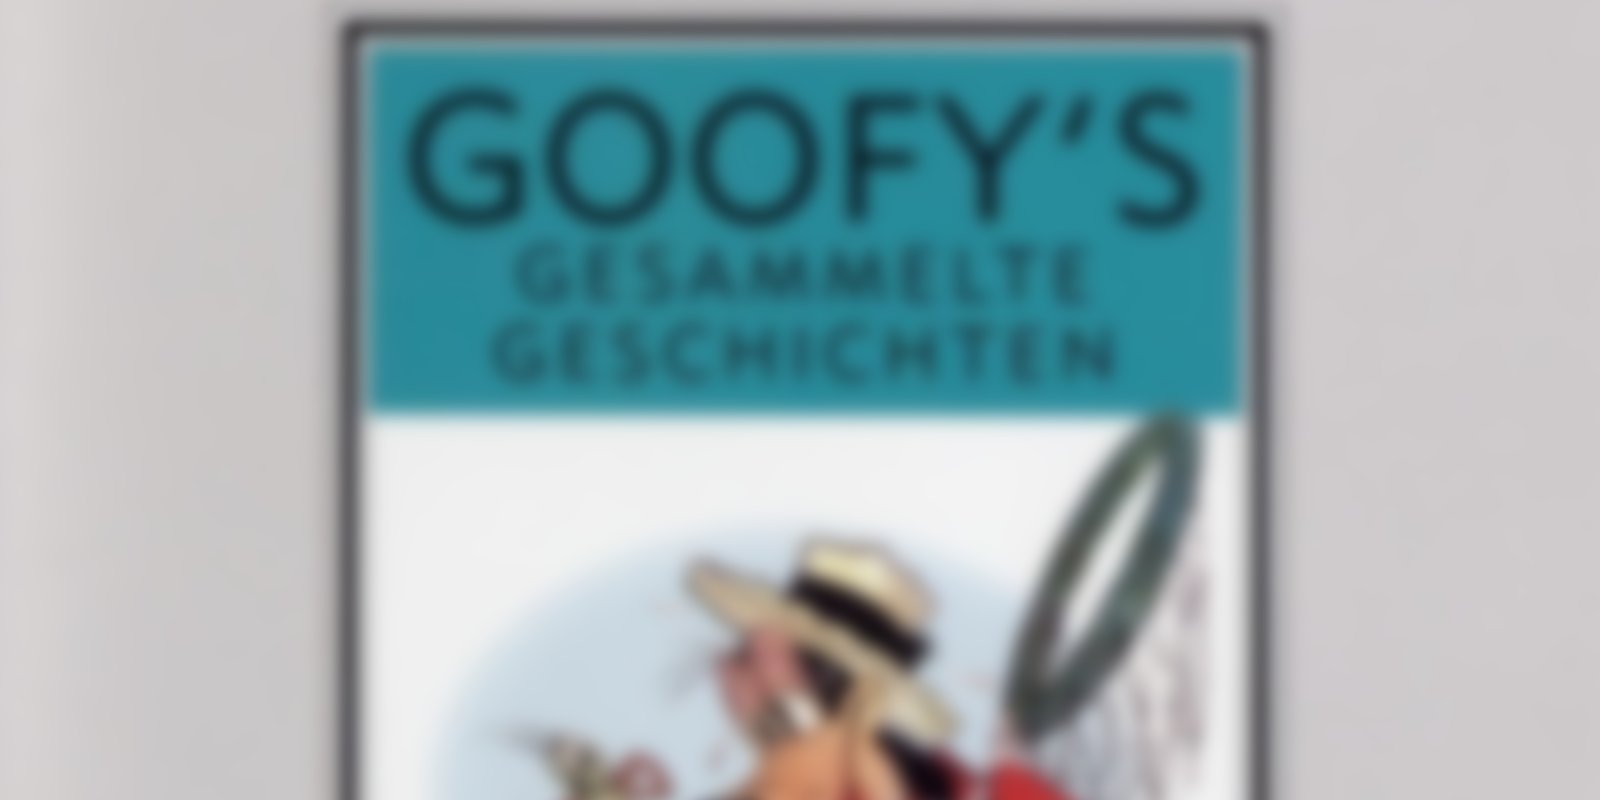 Walt Disney Kostbarkeiten - Goofys gesammelte Geschichten 1939-1961